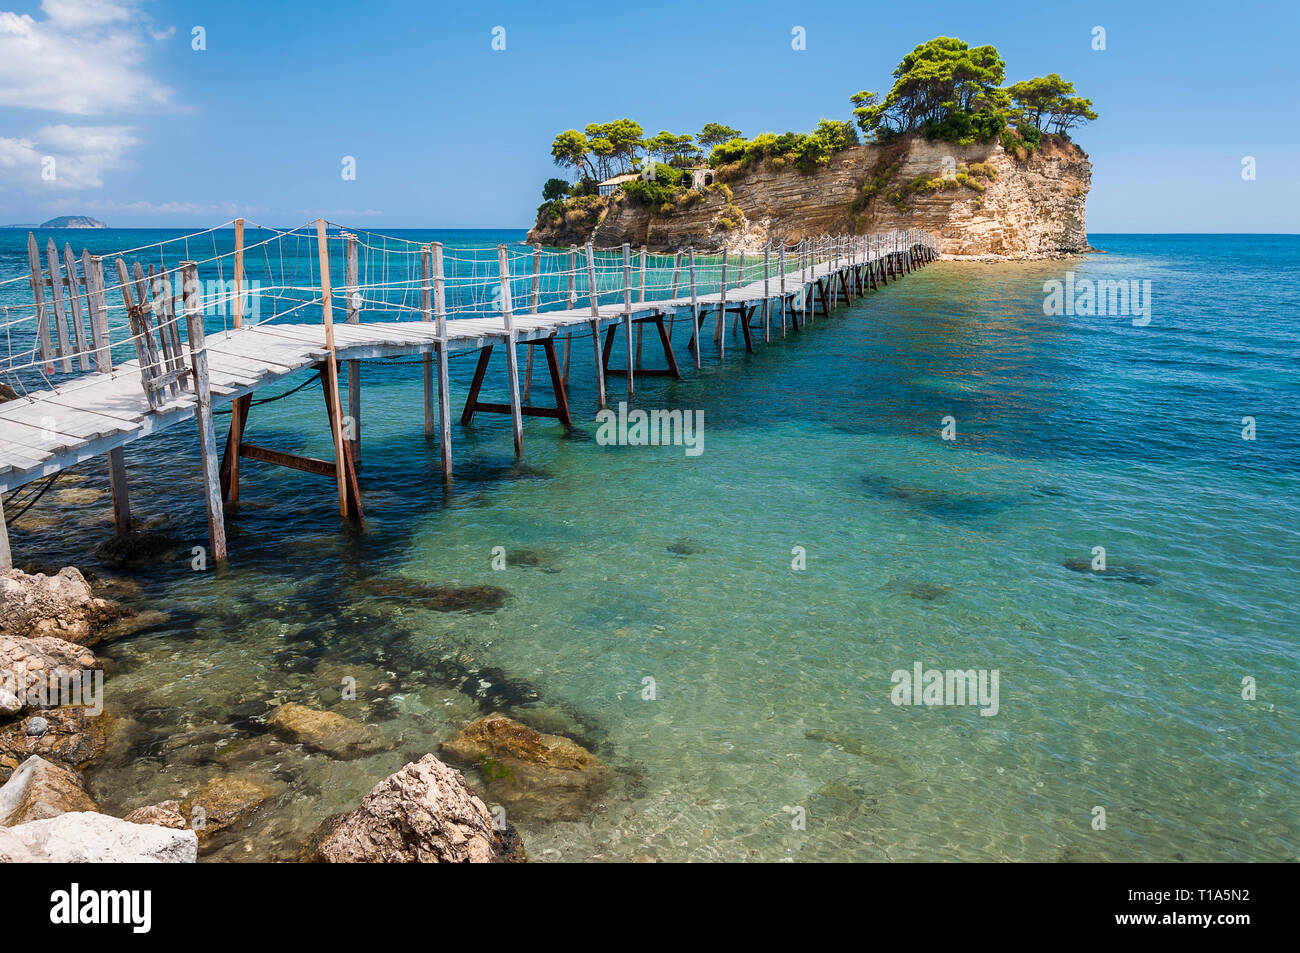 Paysage d'été célèbre et romantique vide de pont de bois à la mer grecque à petite île Cameo. Paradise fond coloré de cristal, turquoise s Banque D'Images